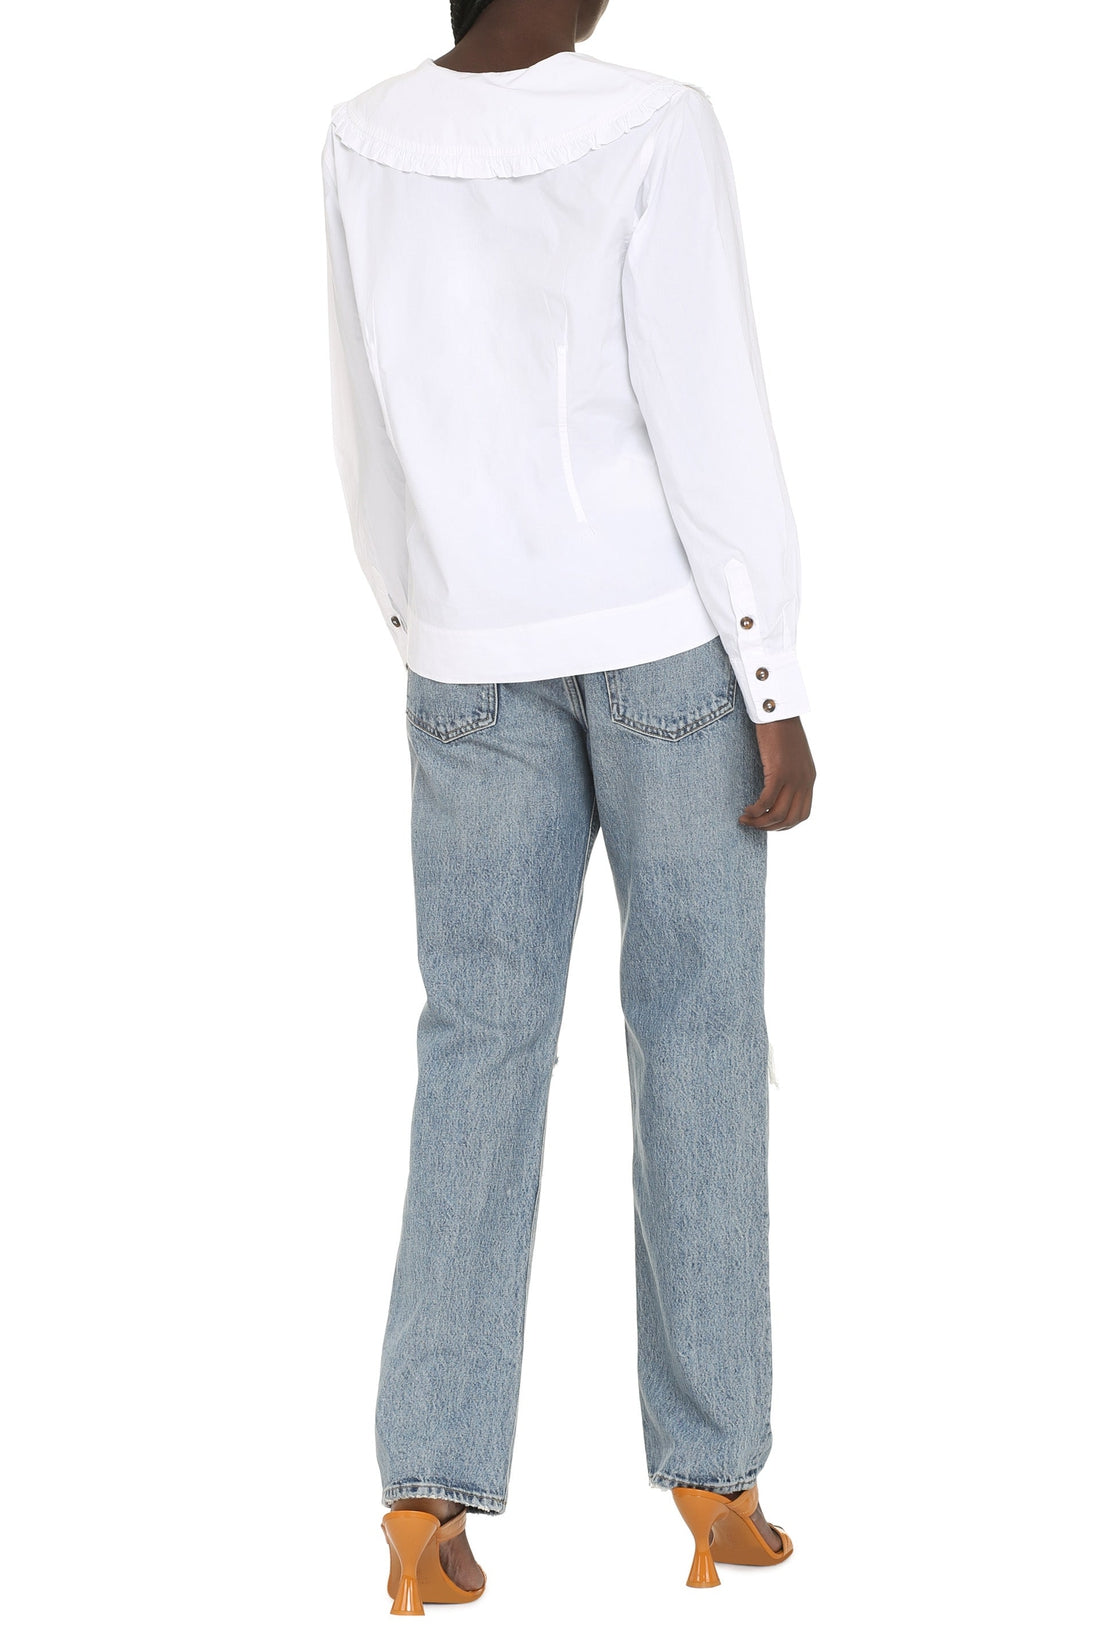 GANNI-OUTLET-SALE-Maxi collar cotton shirt-ARCHIVIST